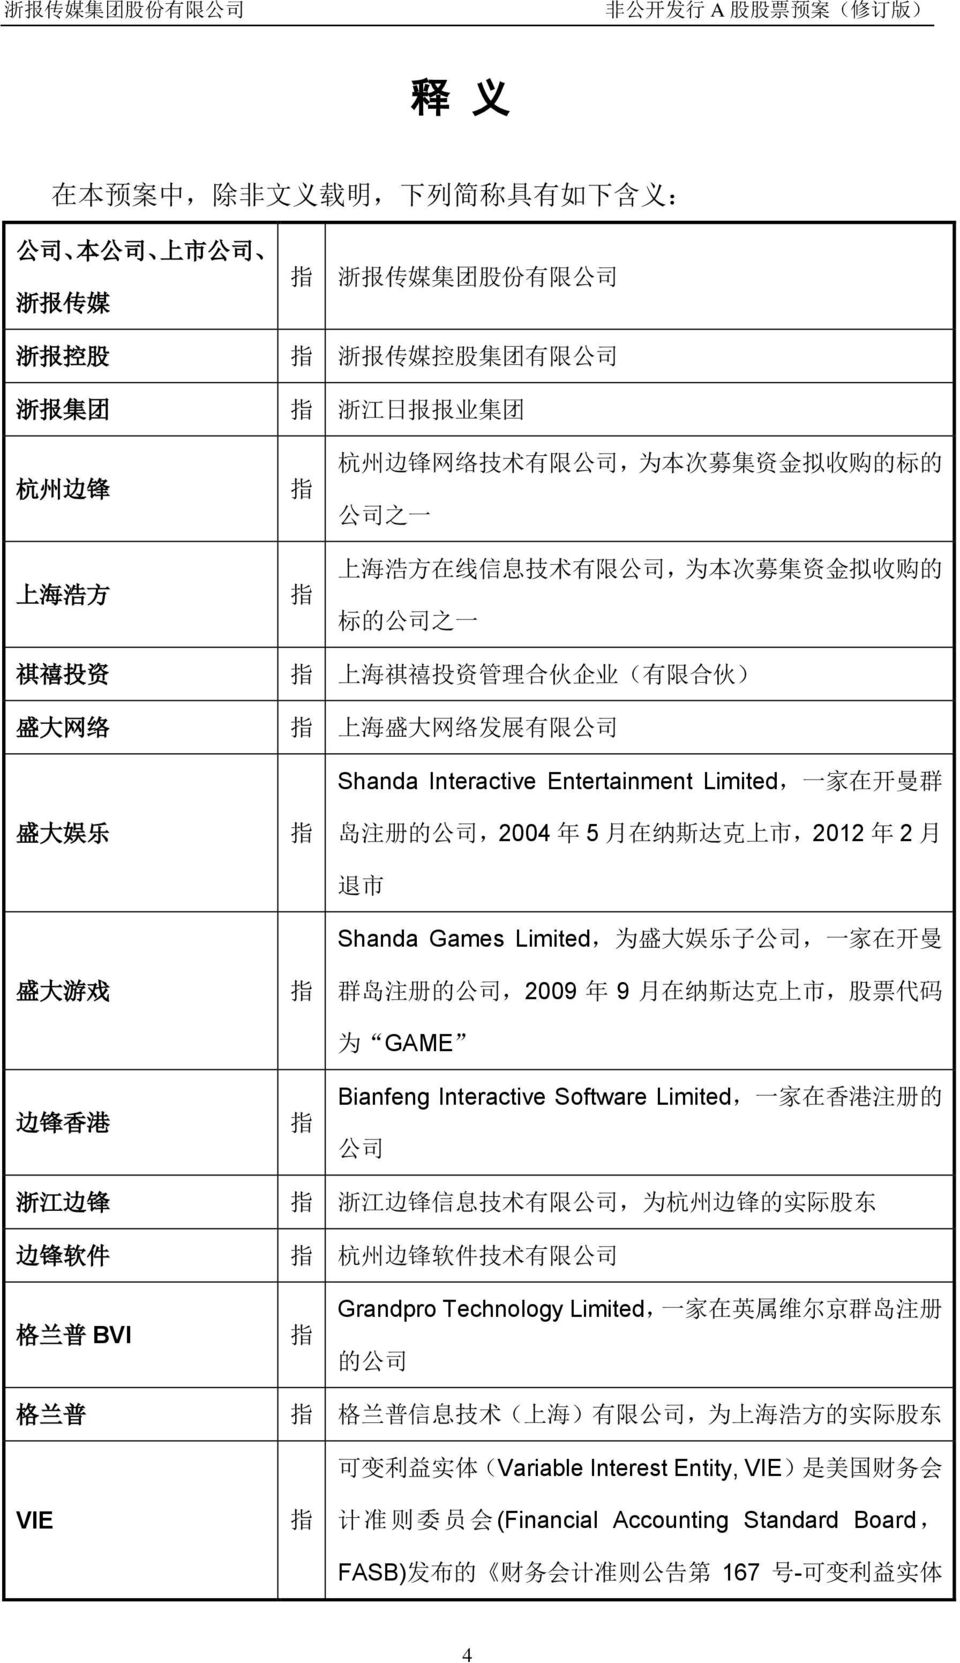 边 锋 香 港 指 指 指 Shanda Interactive Entertainment Limited, 一 家 在 开 曼 群 岛 注 册 的 公 司,2004 年 5 月 在 纳 斯 达 克 上 市,2012 年 2 月 退 市 Shanda Games Limited, 为 盛 大 娱 乐 子 公 司, 一 家 在 开 曼 群 岛 注 册 的 公 司,2009 年 9 月 在 纳 斯